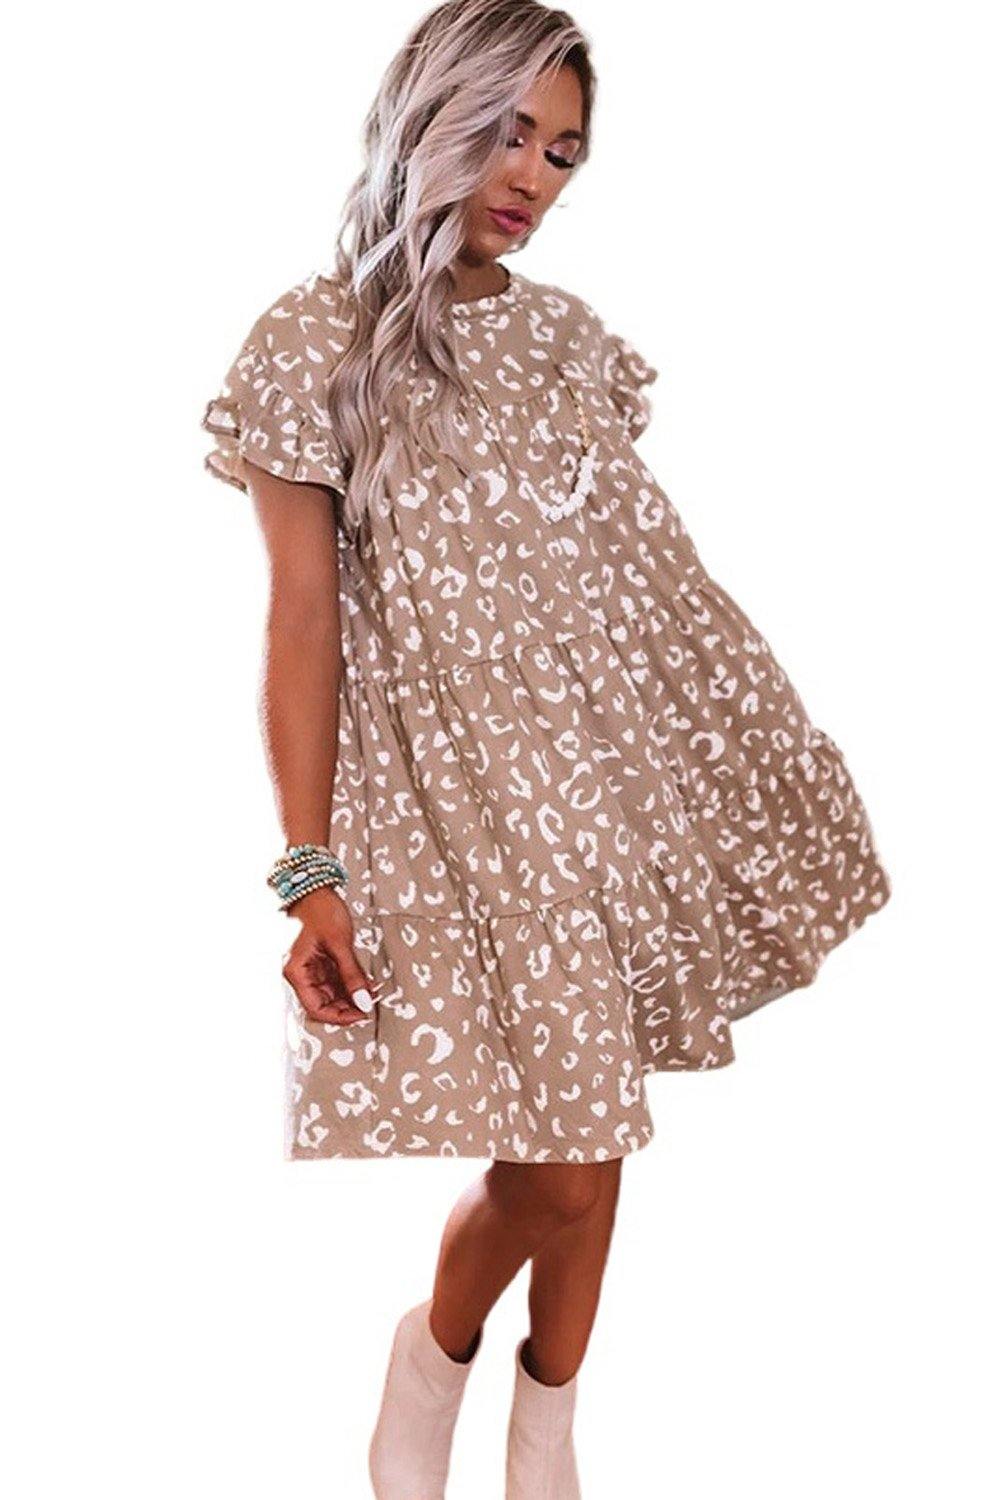 Ruffled Sleeve Shift Mini Dress - L & M Kee, LLC